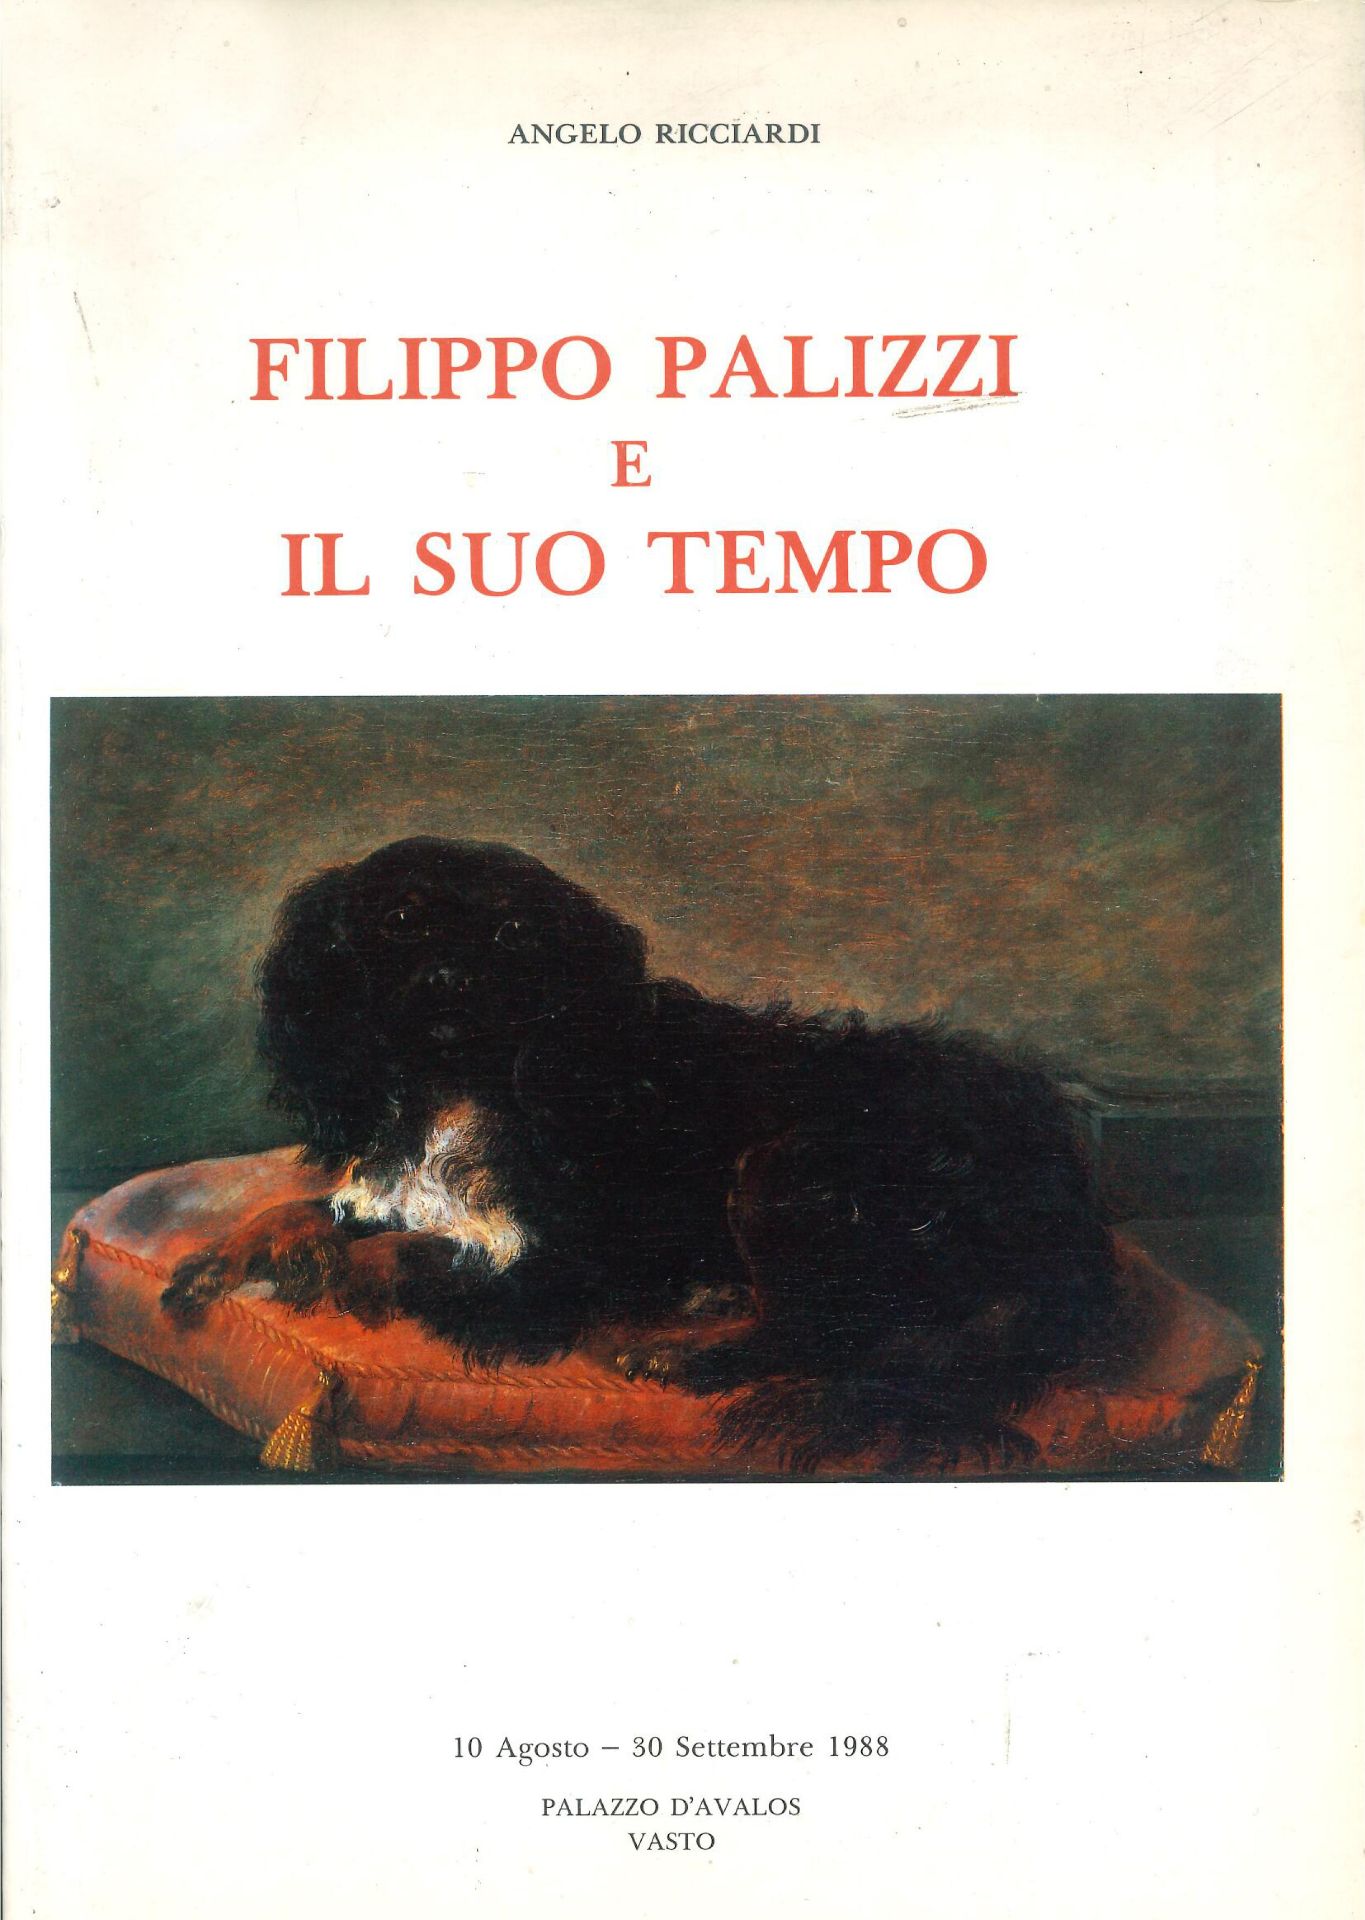 "Pastorella Abruzzese" - Tito Pellicciotti - Image 7 of 9